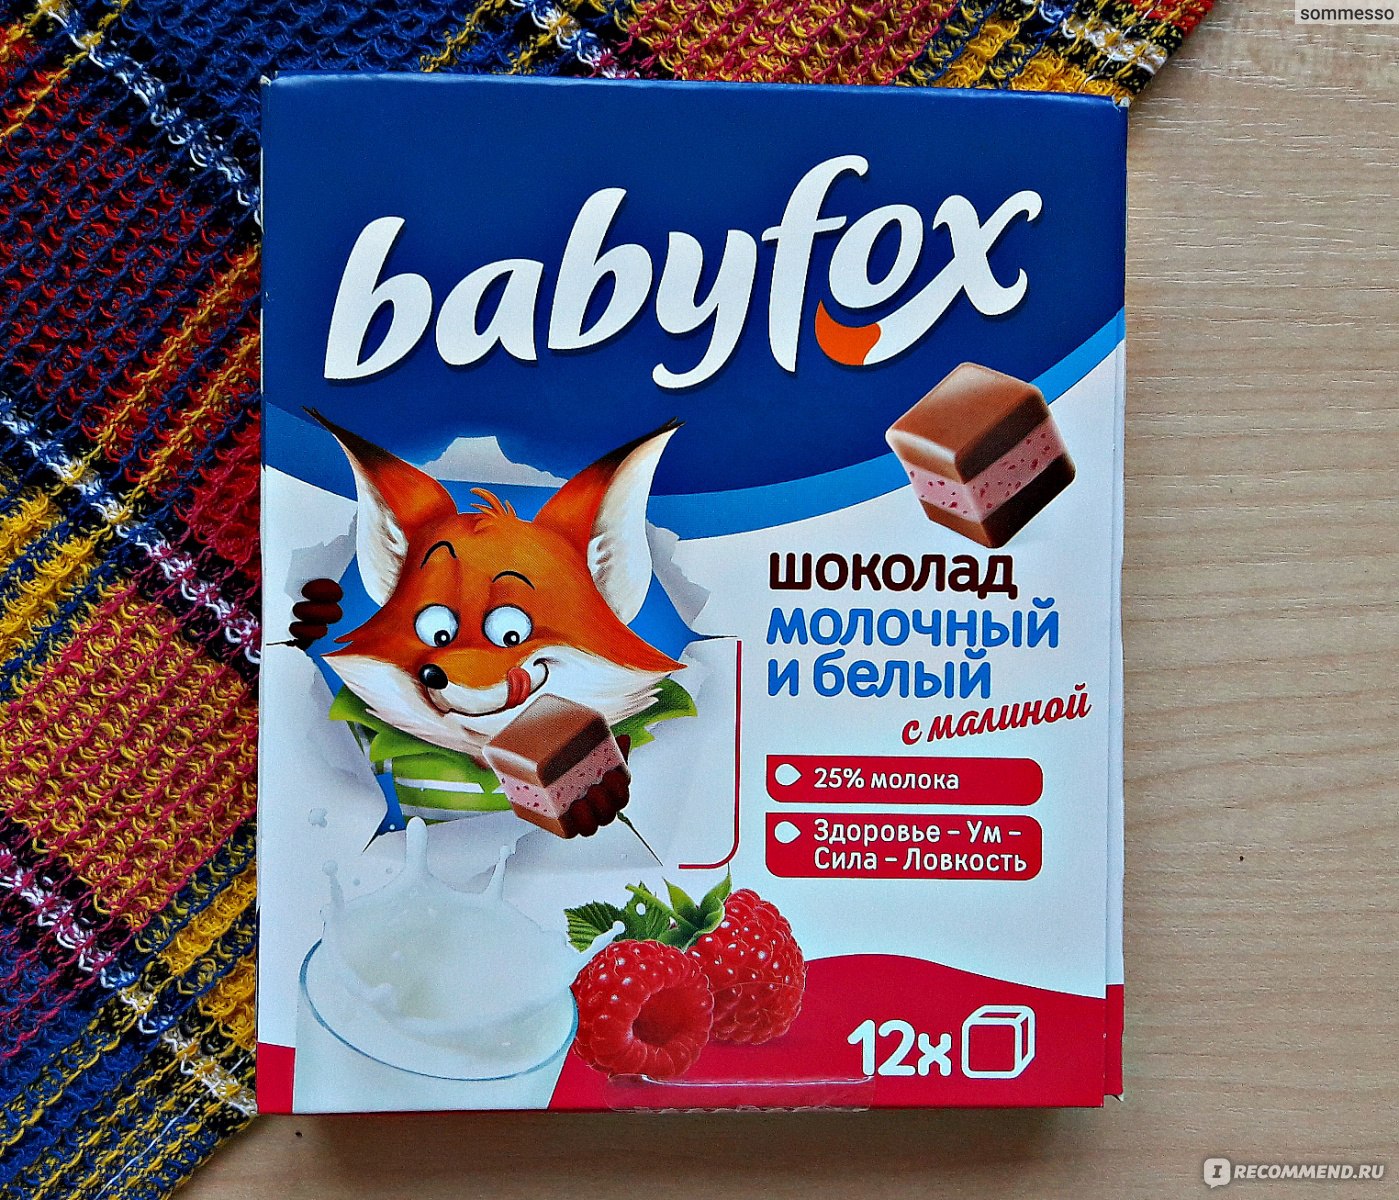 Где Можно Купить Шоколад Babyfox В Москве